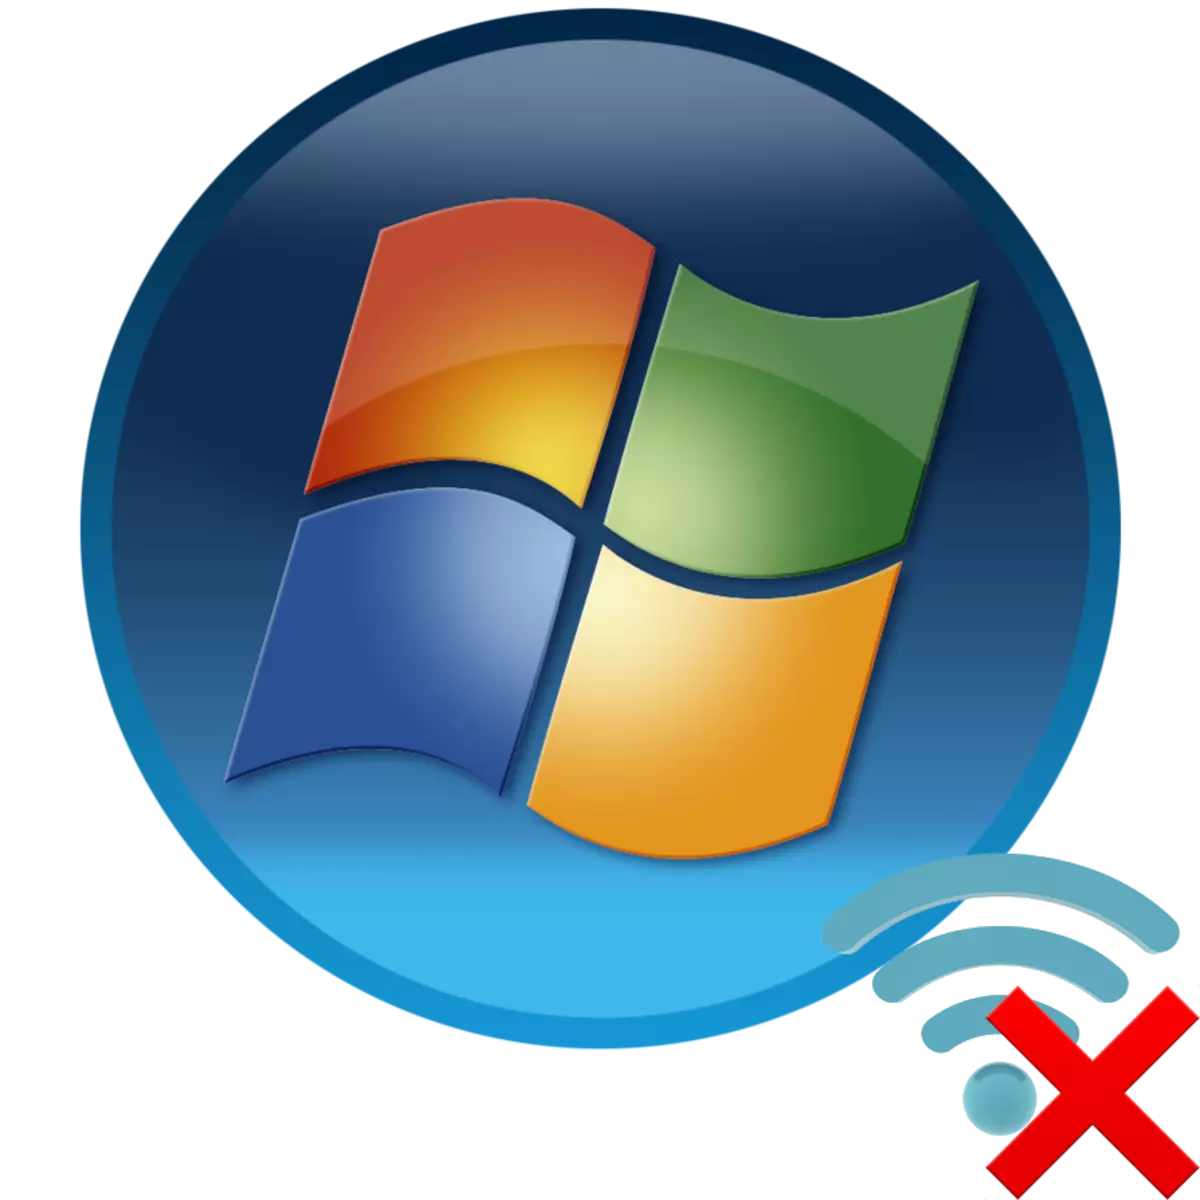 በ Windows 7 ጋር ኮምፒውተር ላይ ምንም አይገኝም ግንኙነቶች